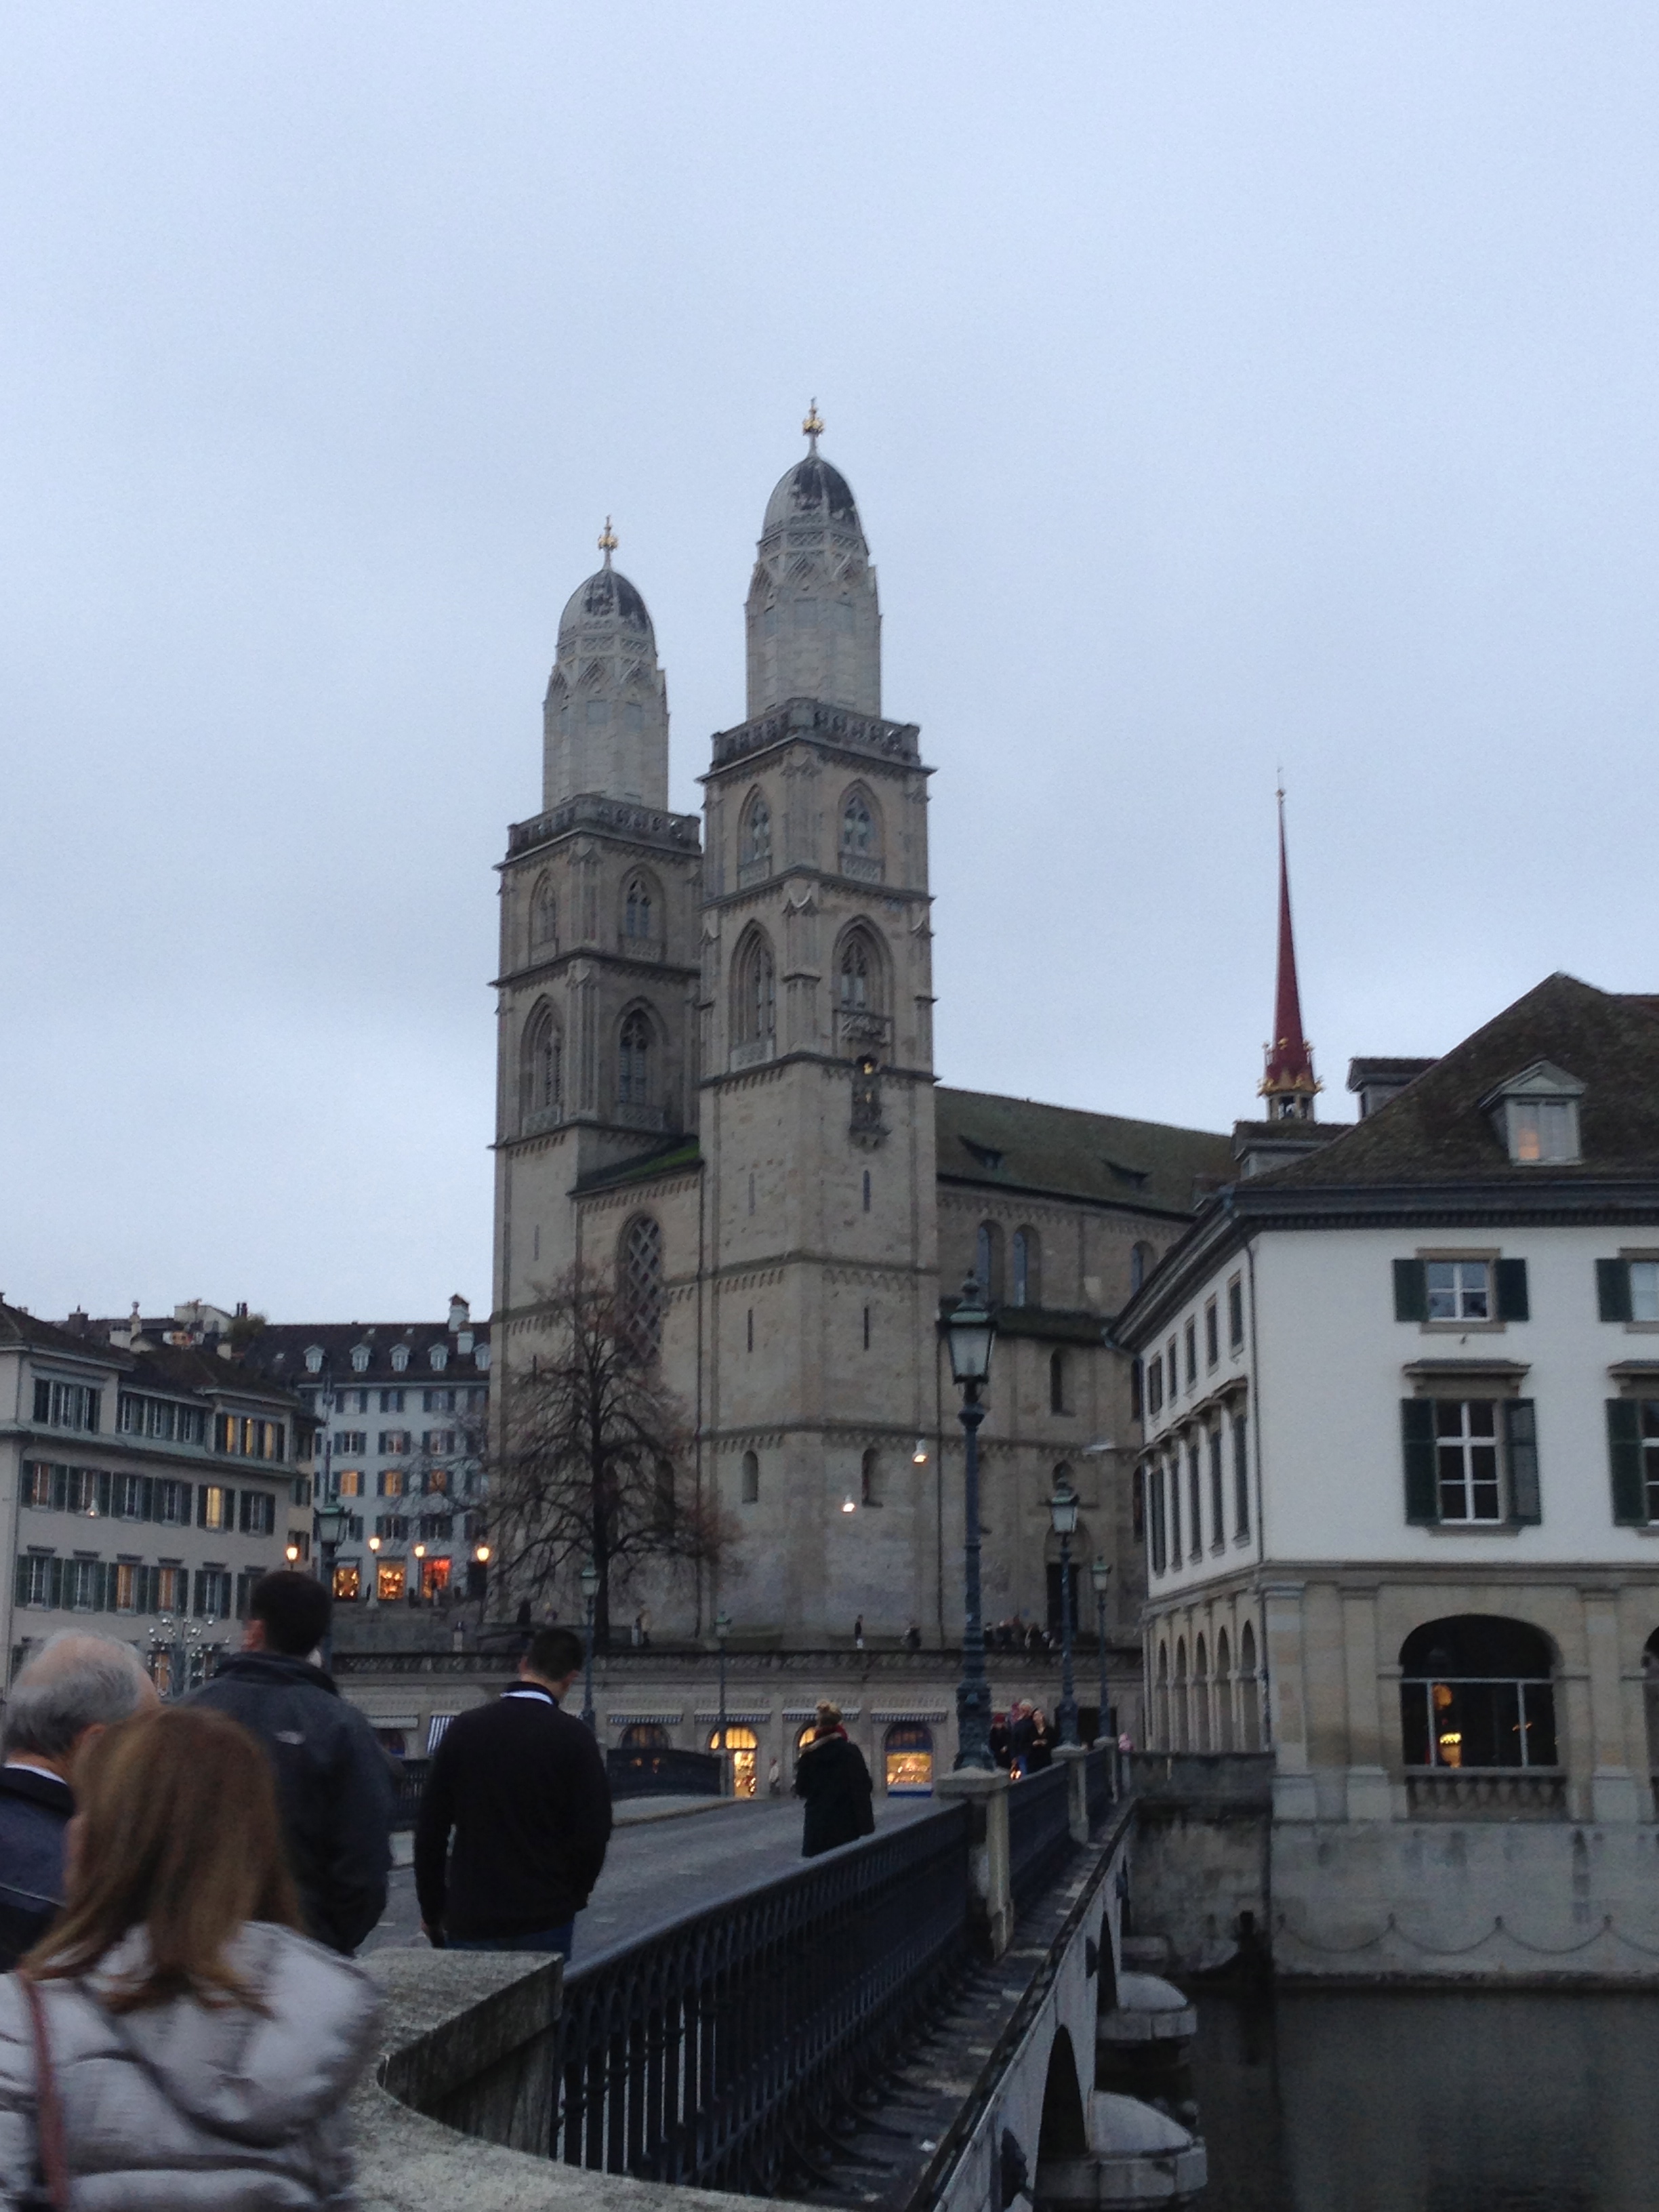 Around Zurich